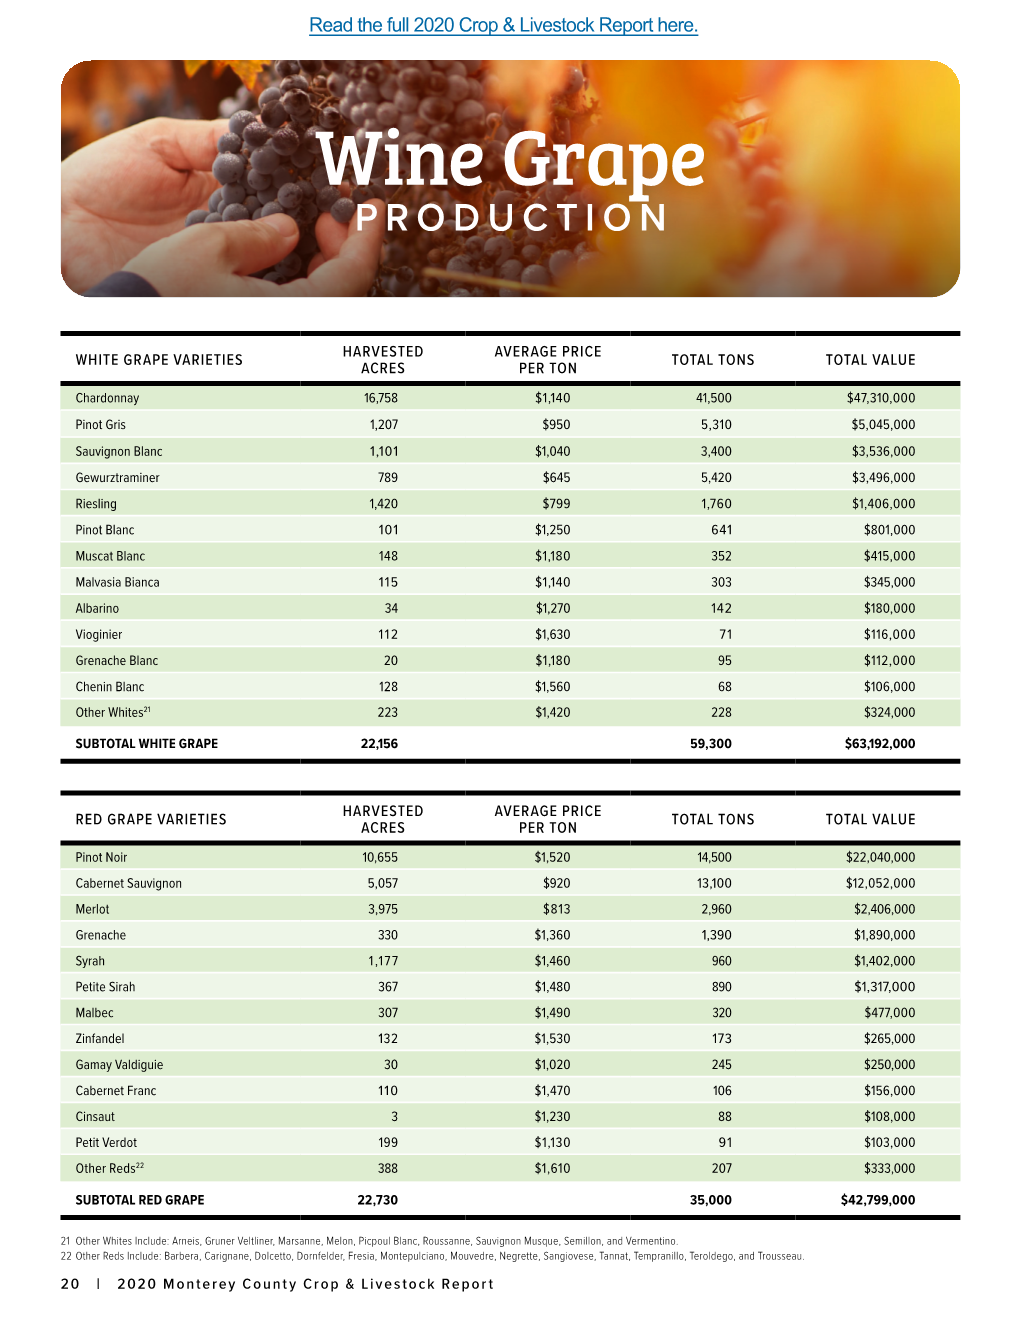 Wi Wine Grape